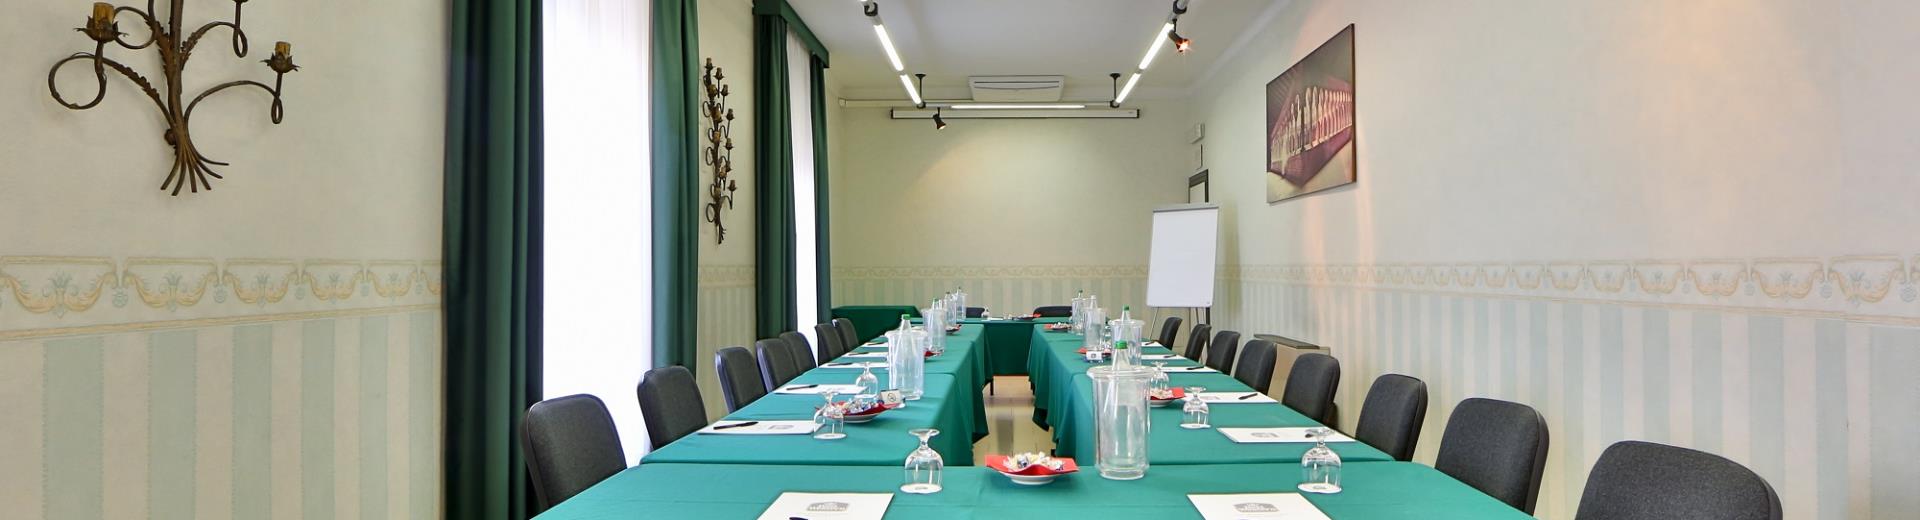 Salles de réunion et de salles à l’hôtel San Donato Bologne